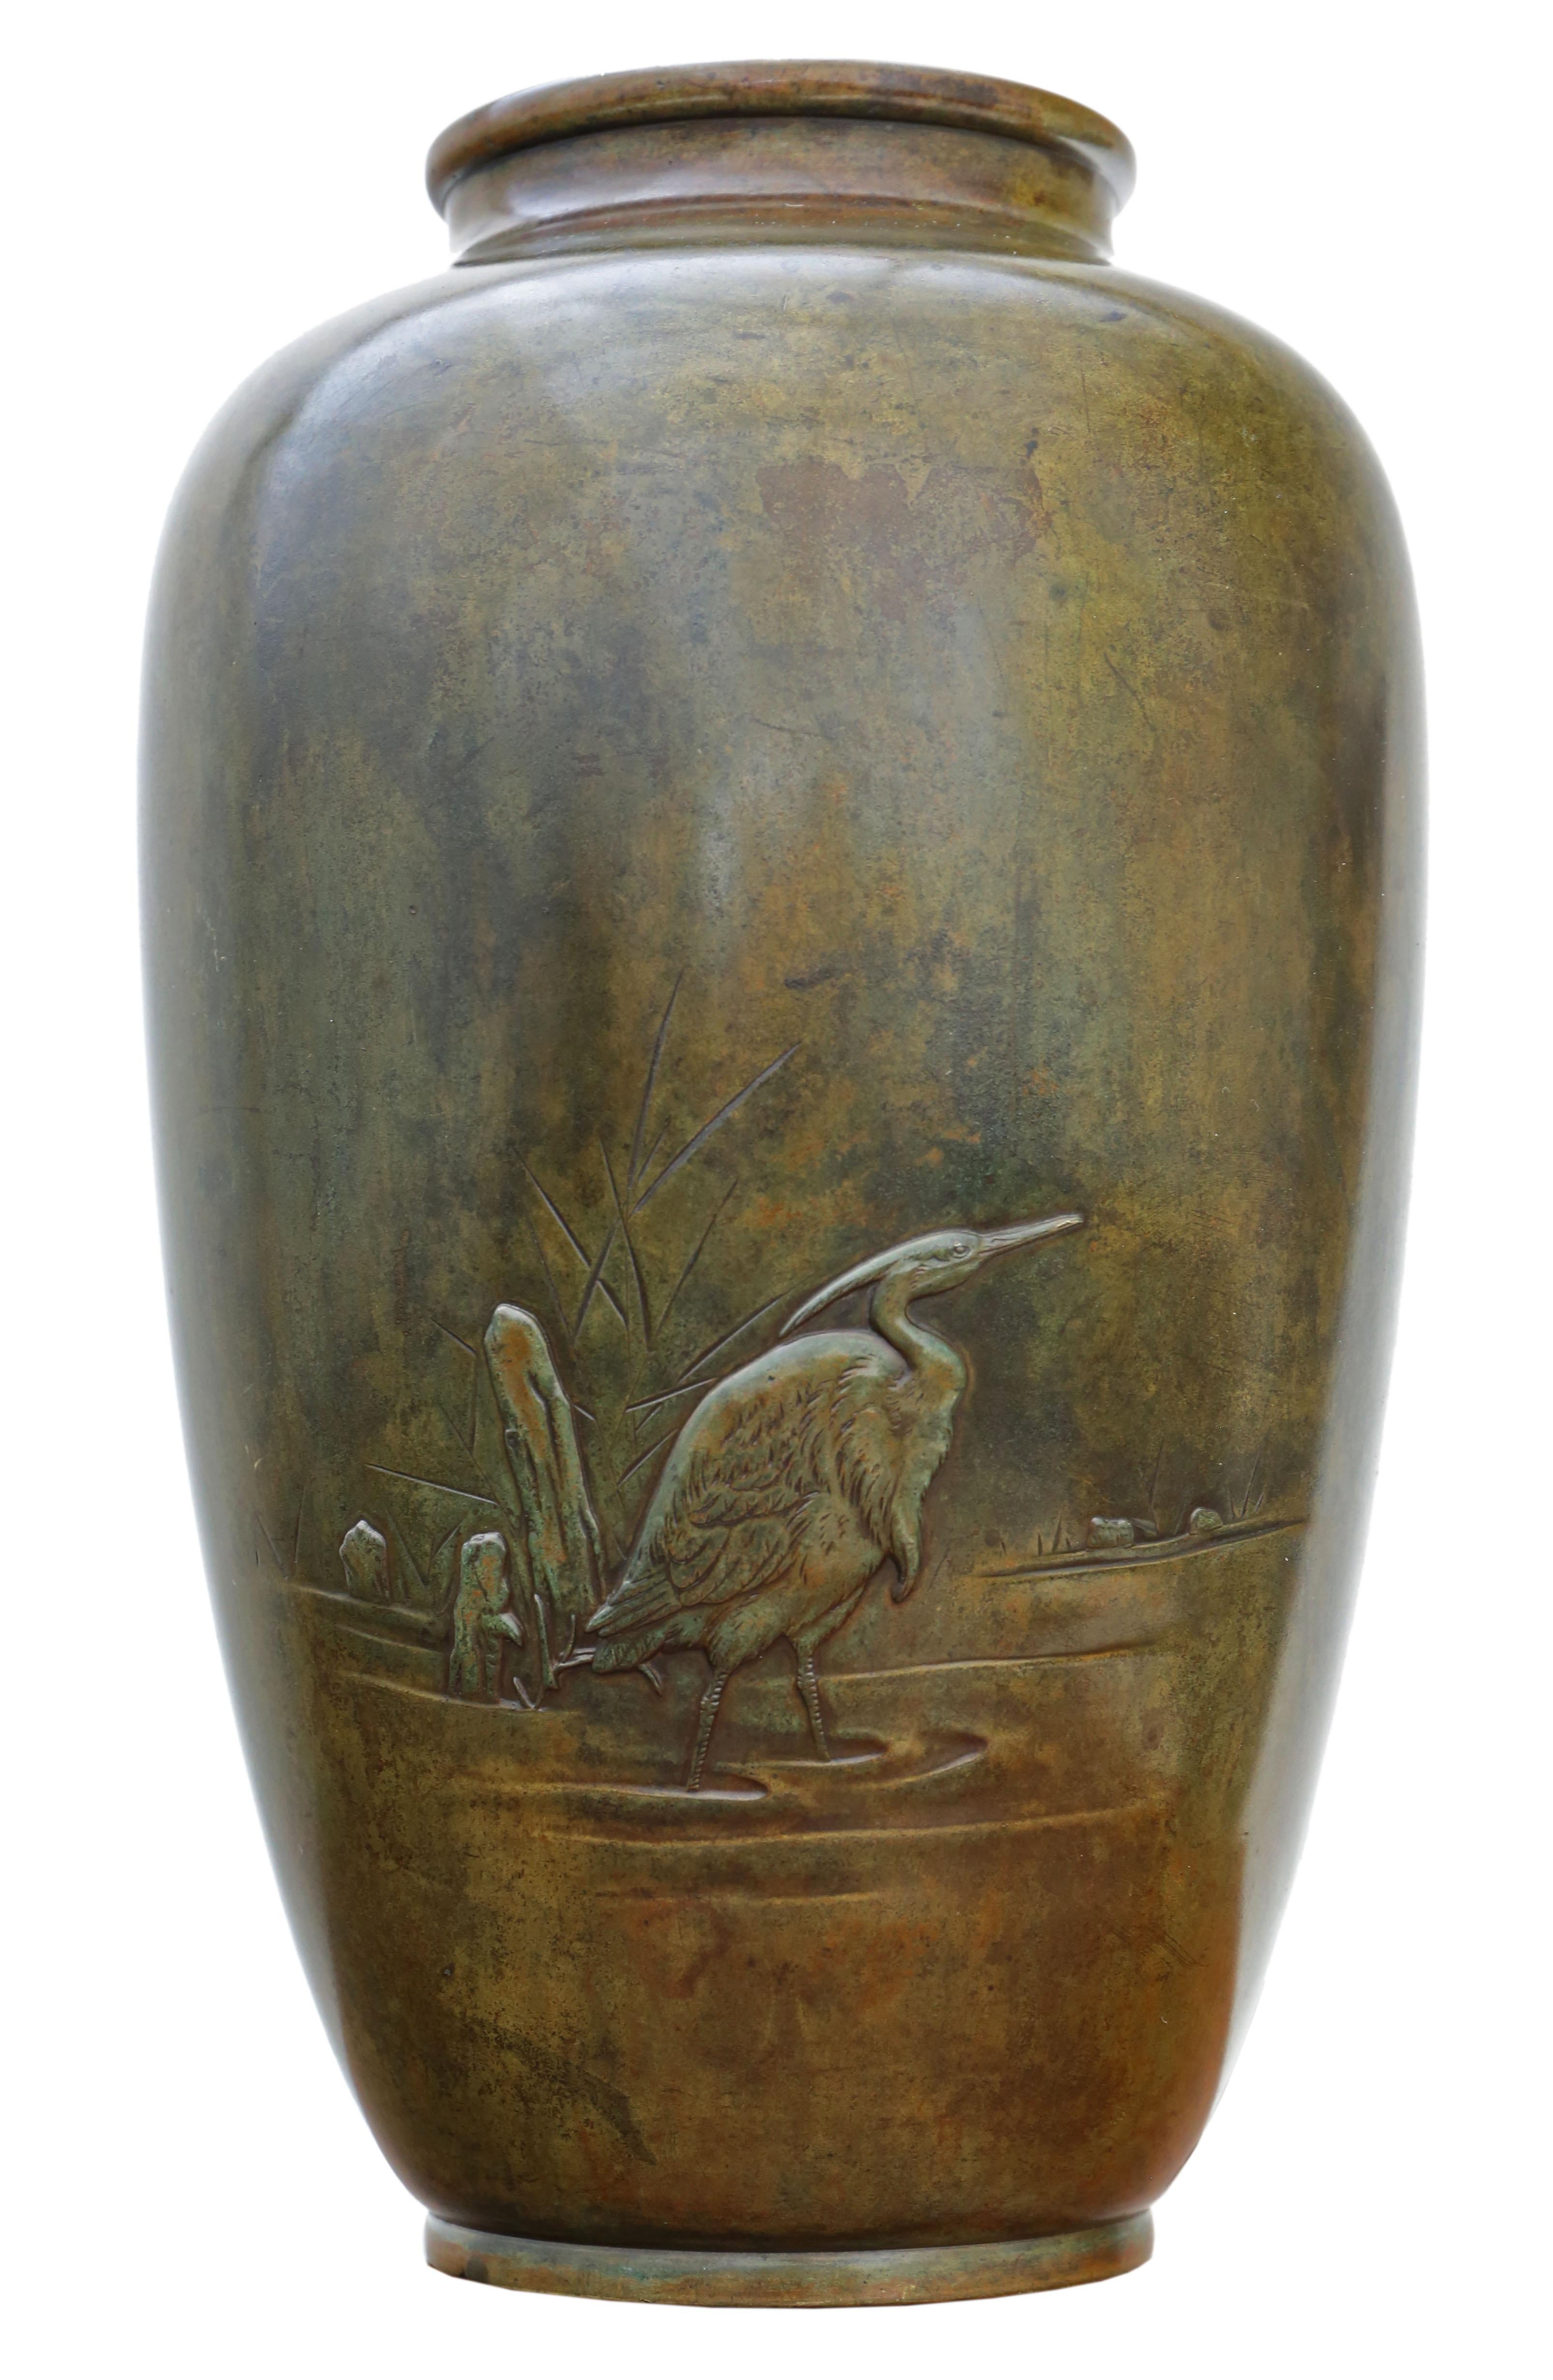 Antike japanische Meiji Periode Bronze Vase - Exquisite Kranich-Darstellung!

Diese außergewöhnliche Bronzevase aus der Meiji-Zeit zeigt eine beeindruckende Darstellung von Kranichen, die in der japanischen Kultur Langlebigkeit und Glück